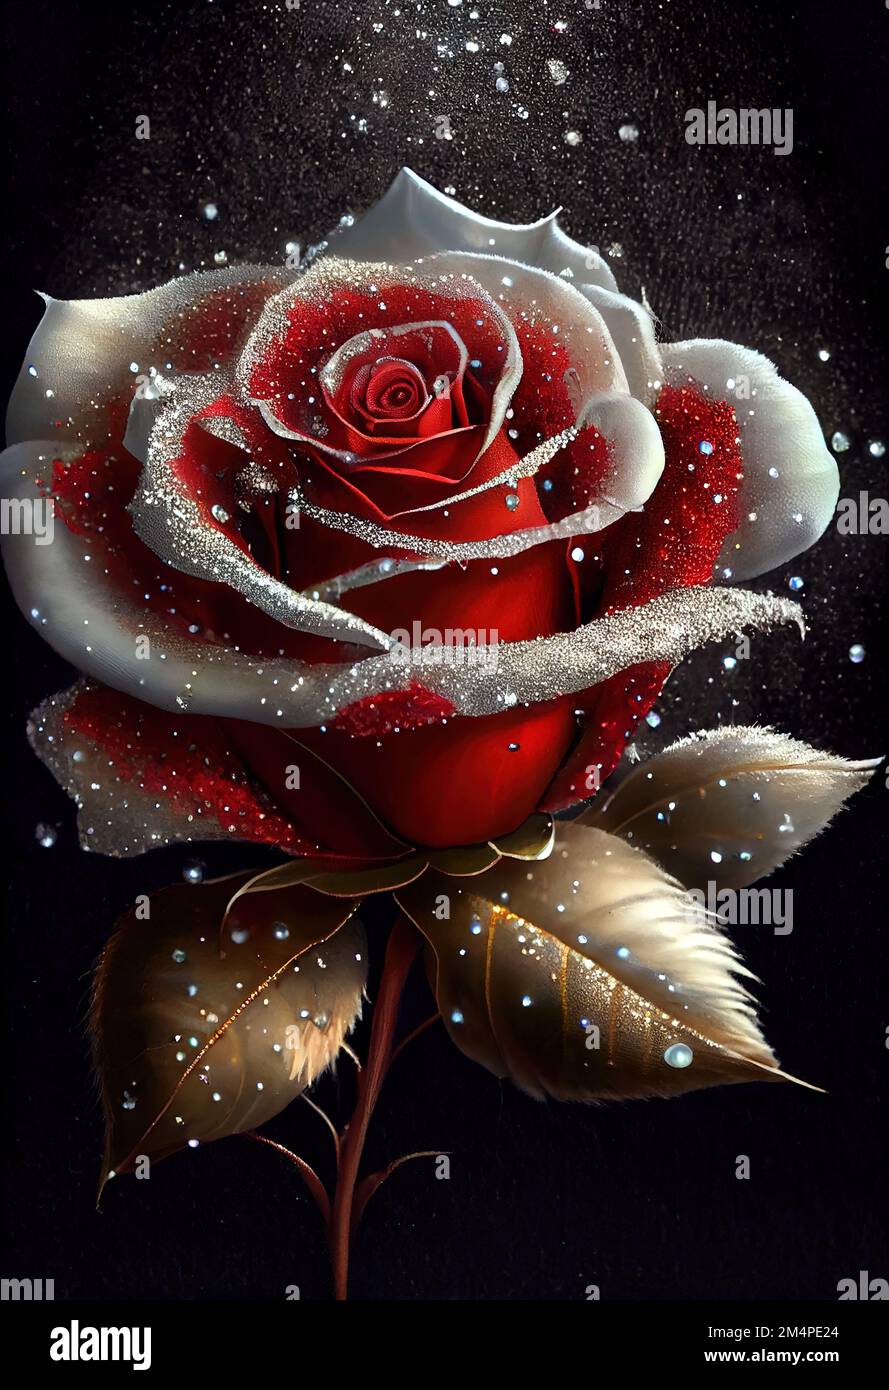 Ein Gemälde einer roten Rose mit Schnee, der auf die Blütenblätter fällt,  und einem schwarzen Hintergrund mit Sternen Stockfotografie - Alamy